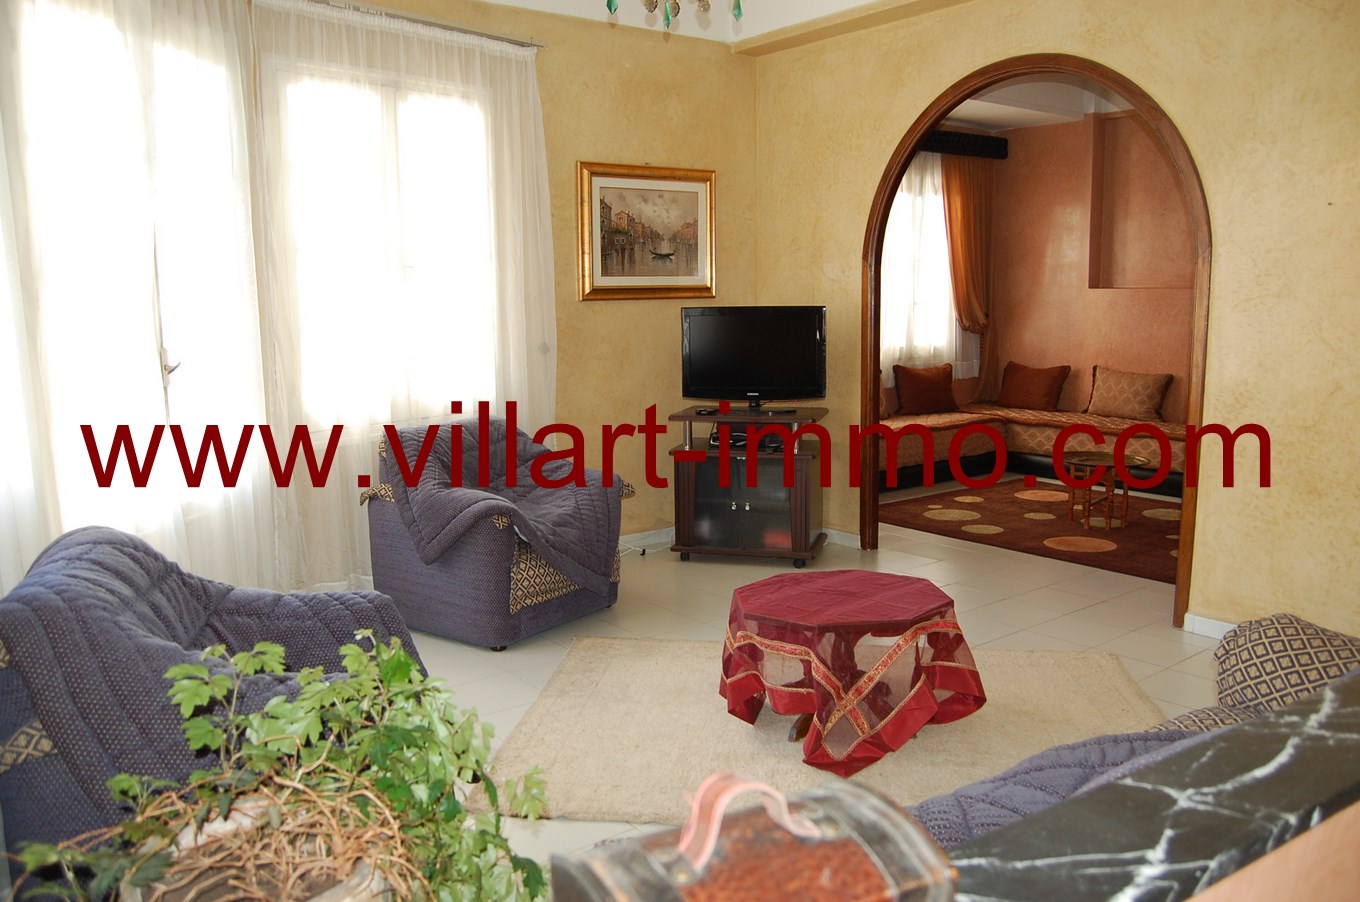 5-Location-Appartement-meublé-Tanger-sejour-L673-Villart-immo